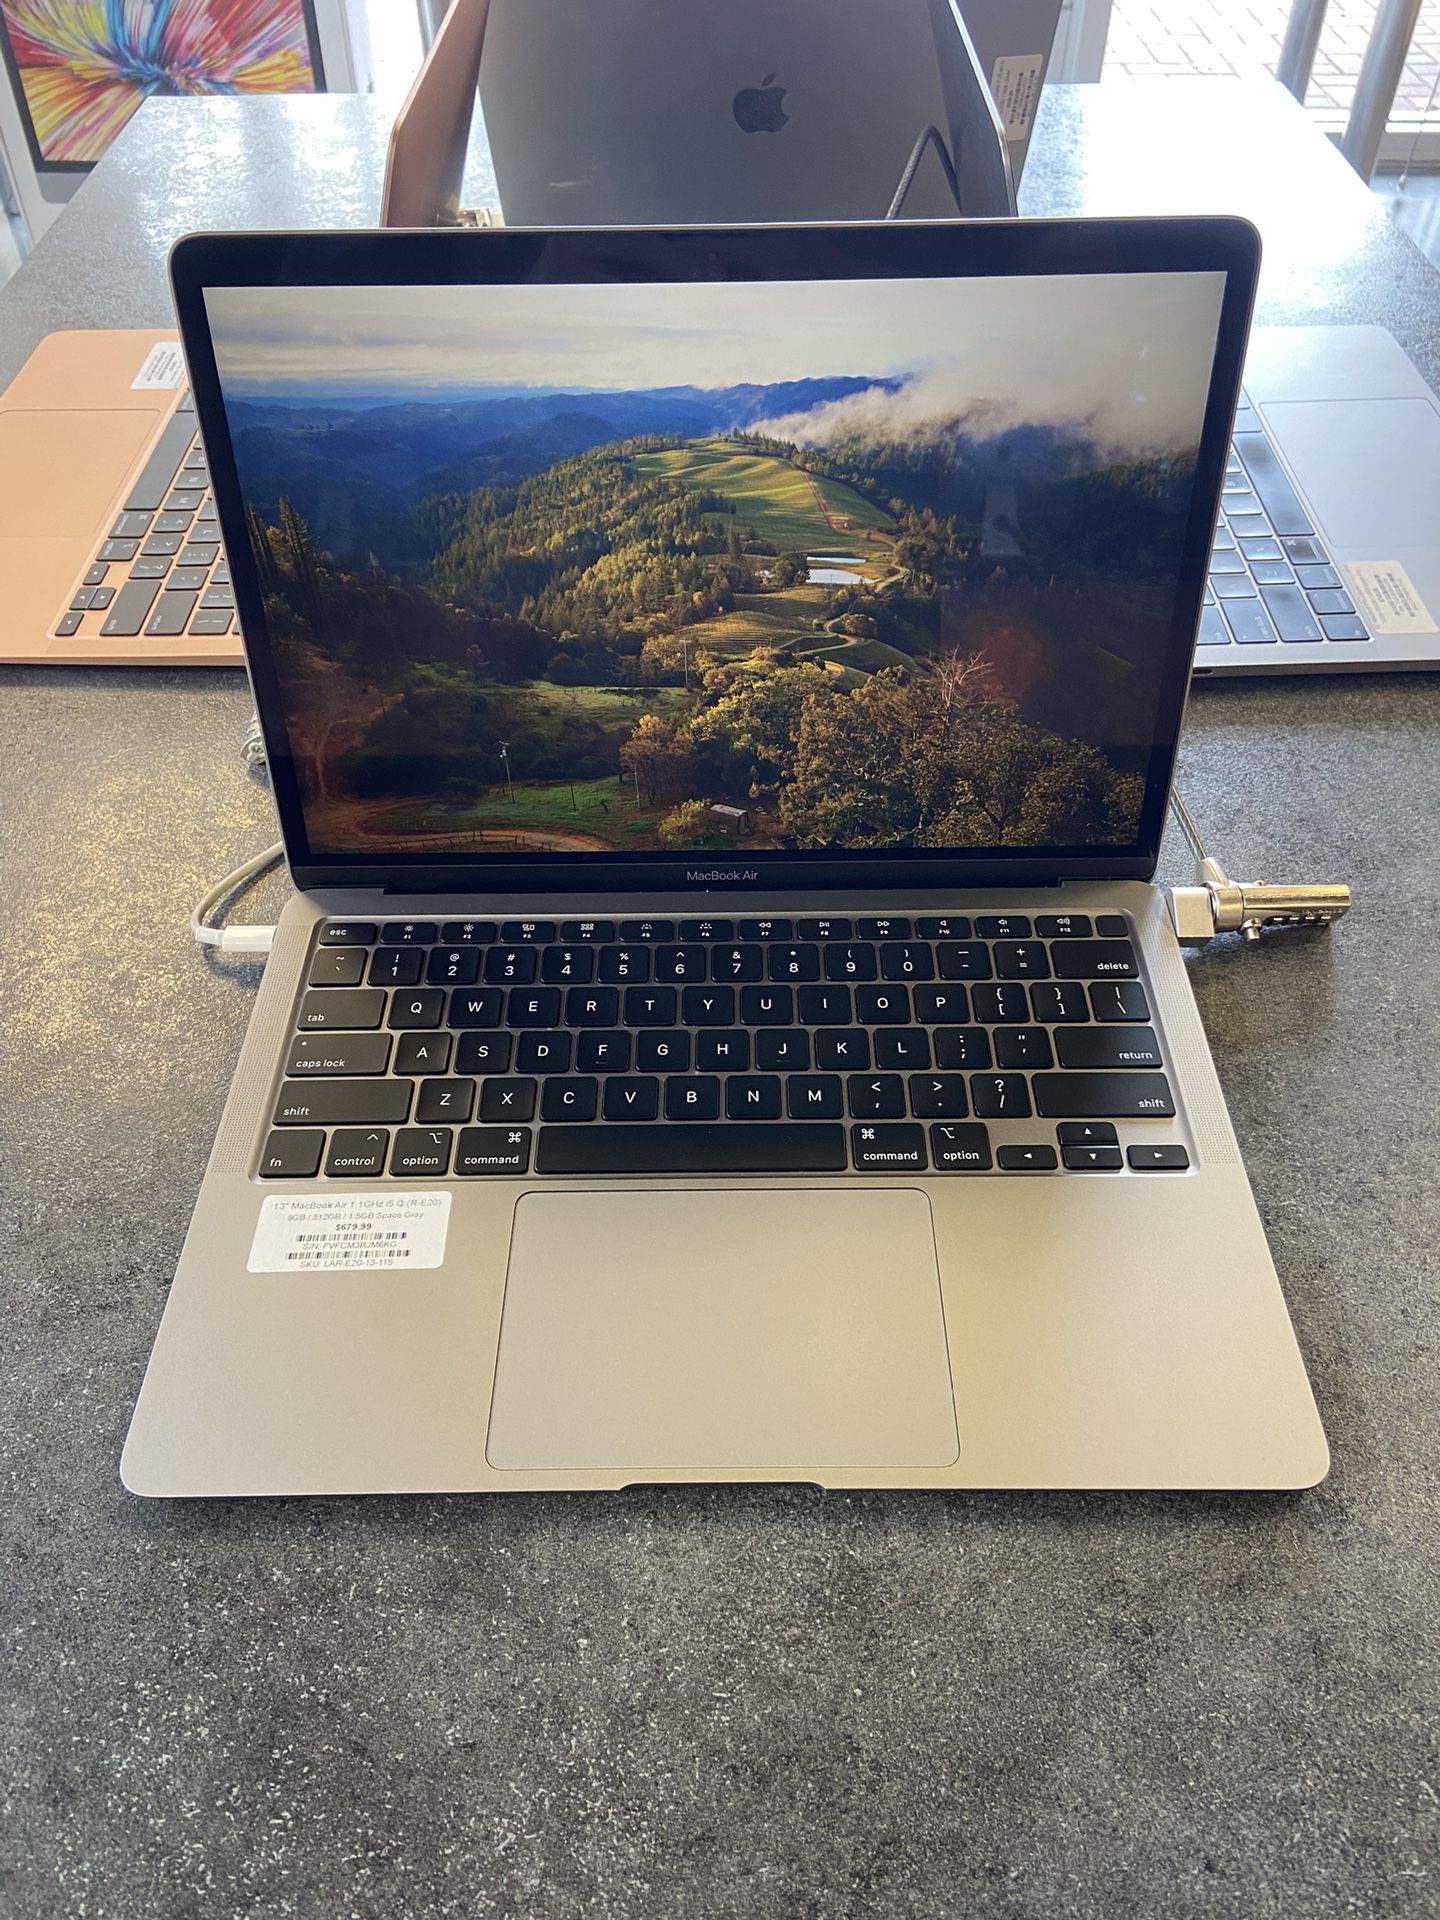 Apple MacBook Air 13" - Intel i5, 8GB RAM, 512GB SSD